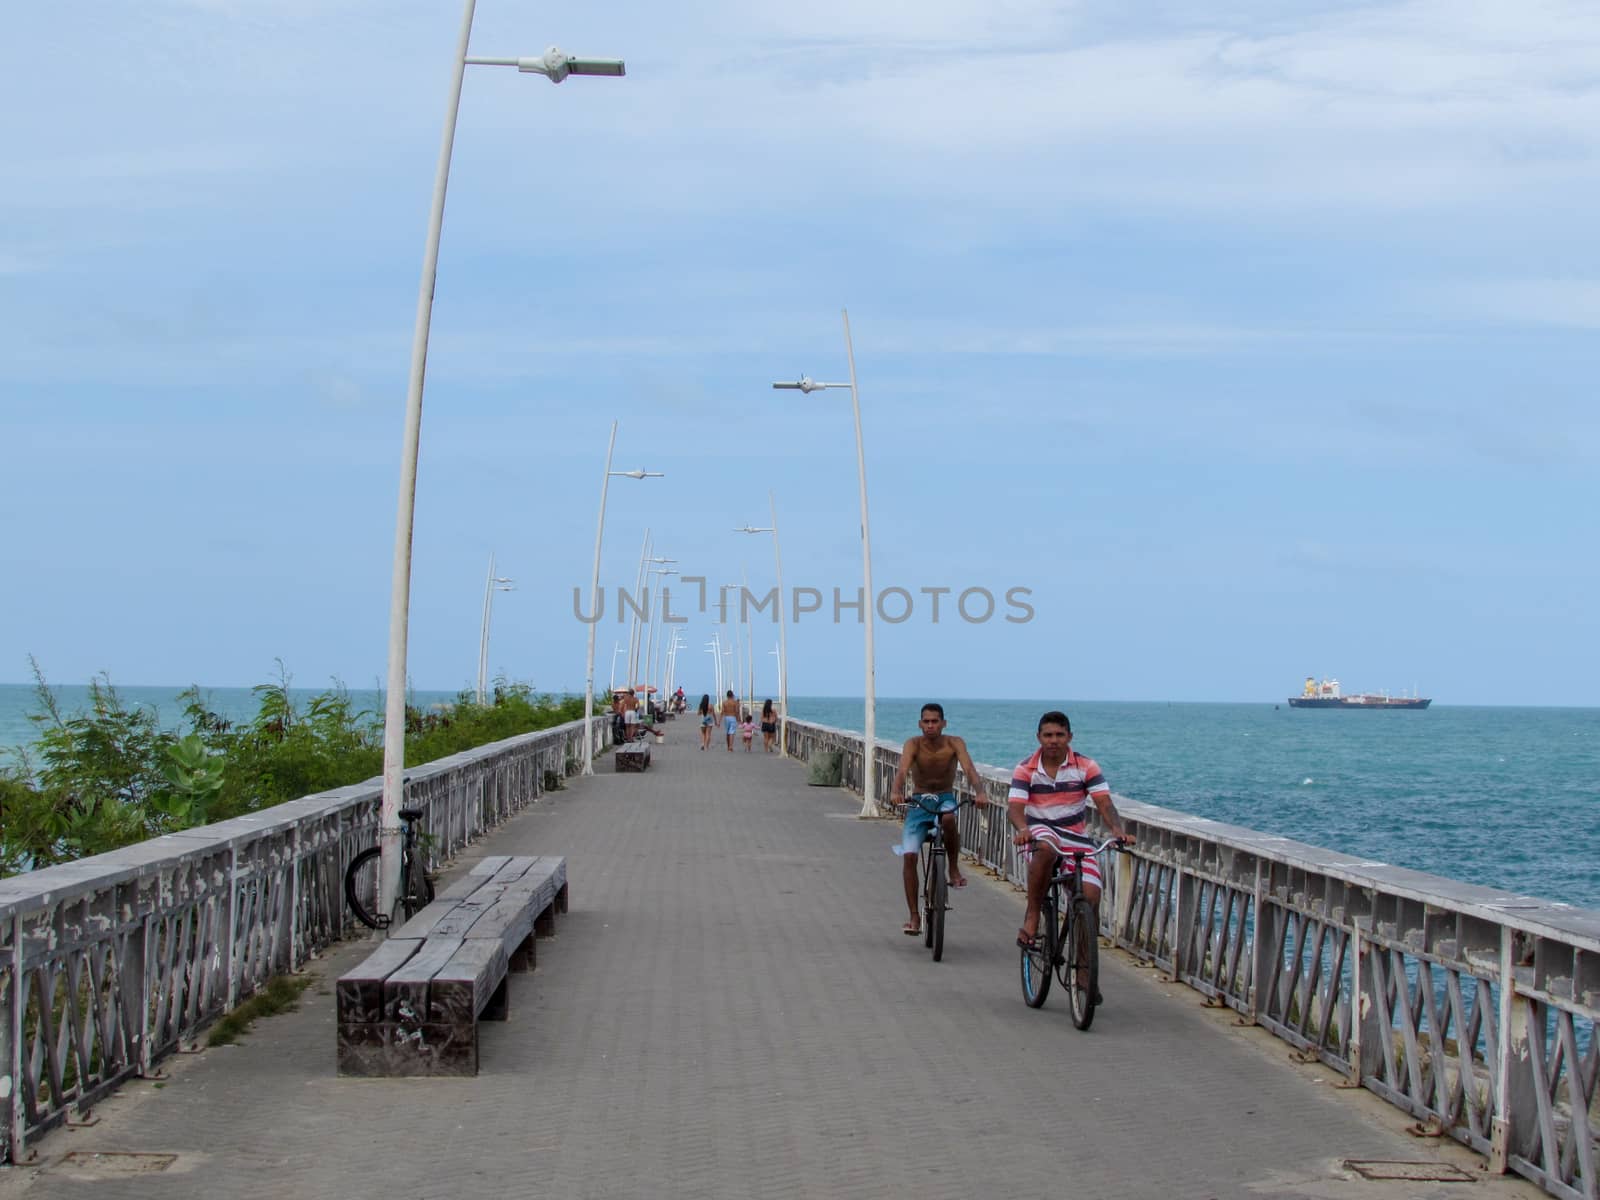 Fortaleza, Brazil - 6 January 2019: People walking on the pier in Fortaleza on Brazil